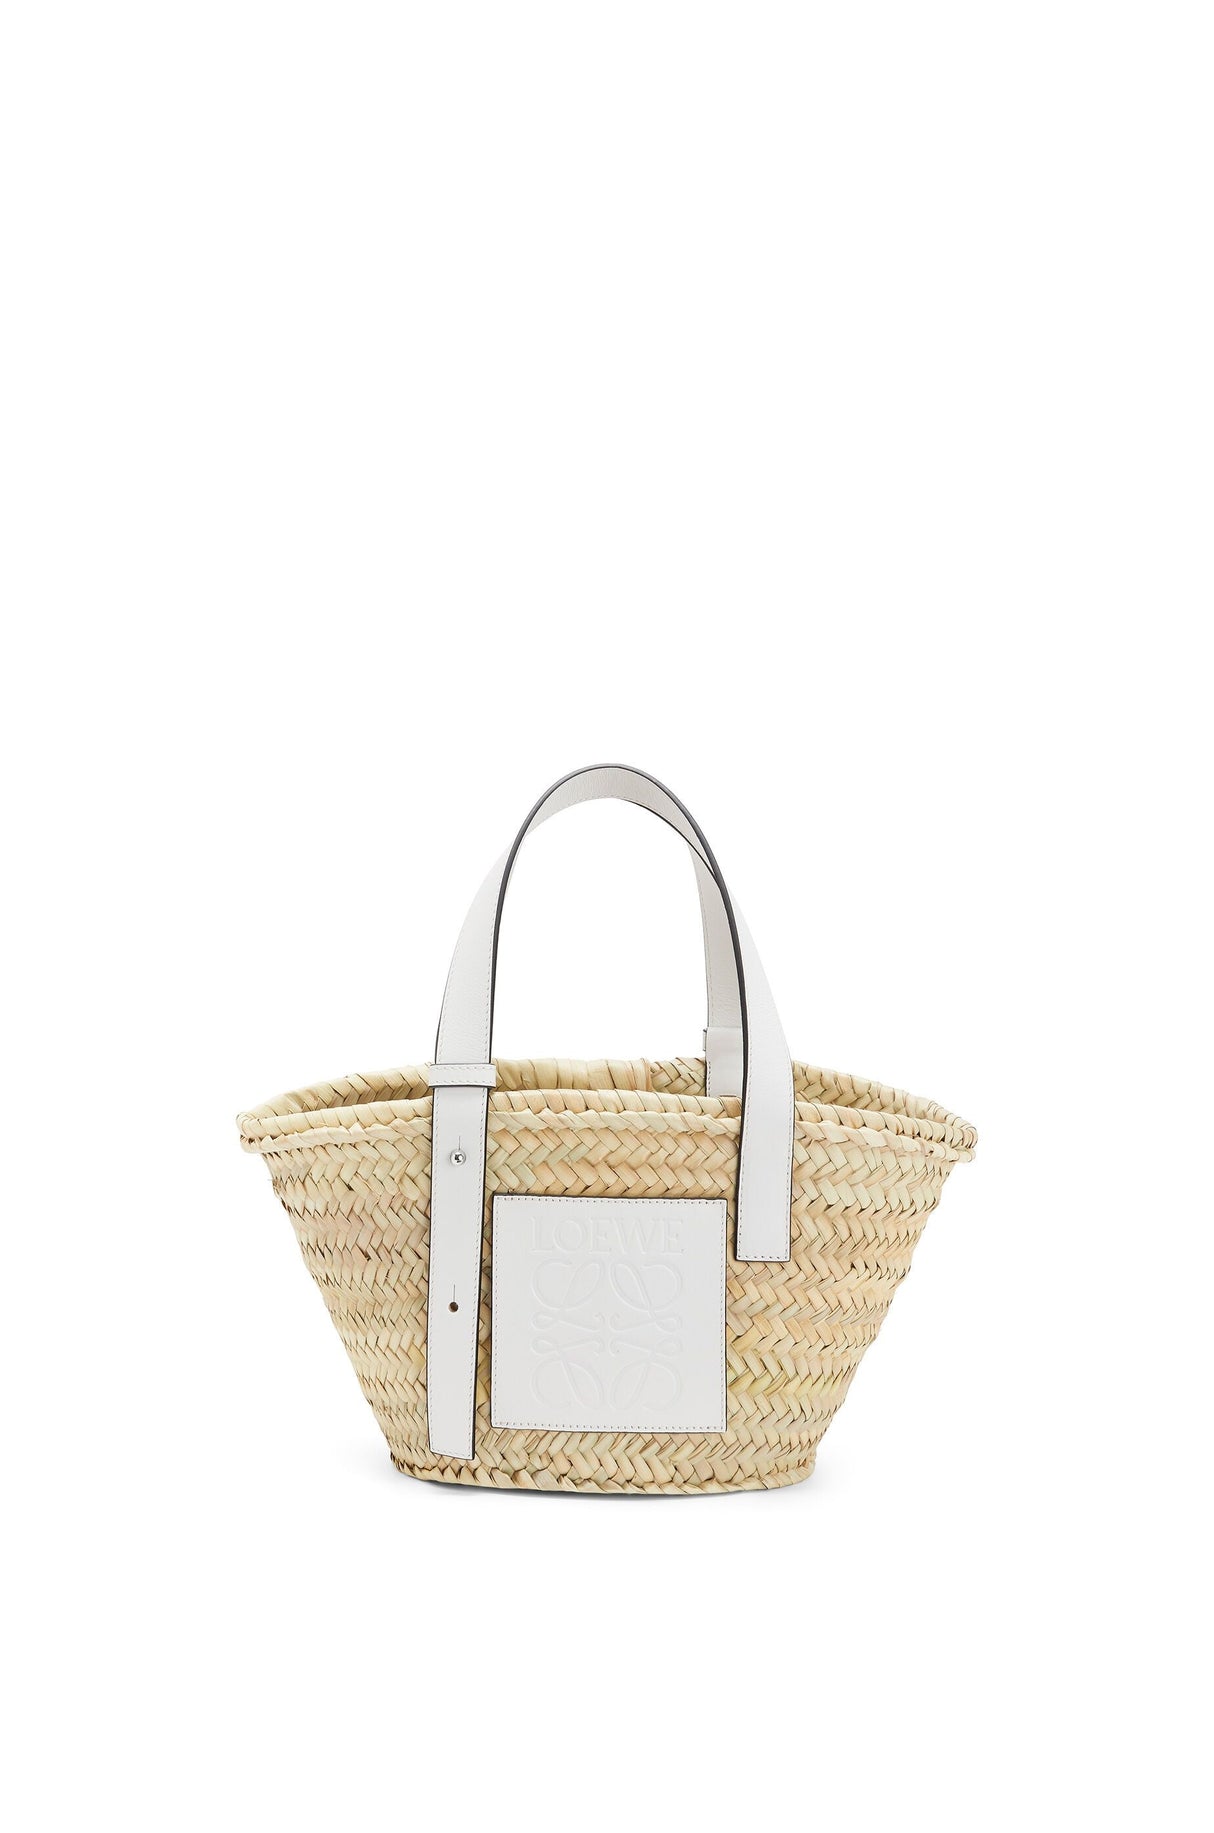 Túi xách Basket nhỏ - Màu trắng tự nhiên